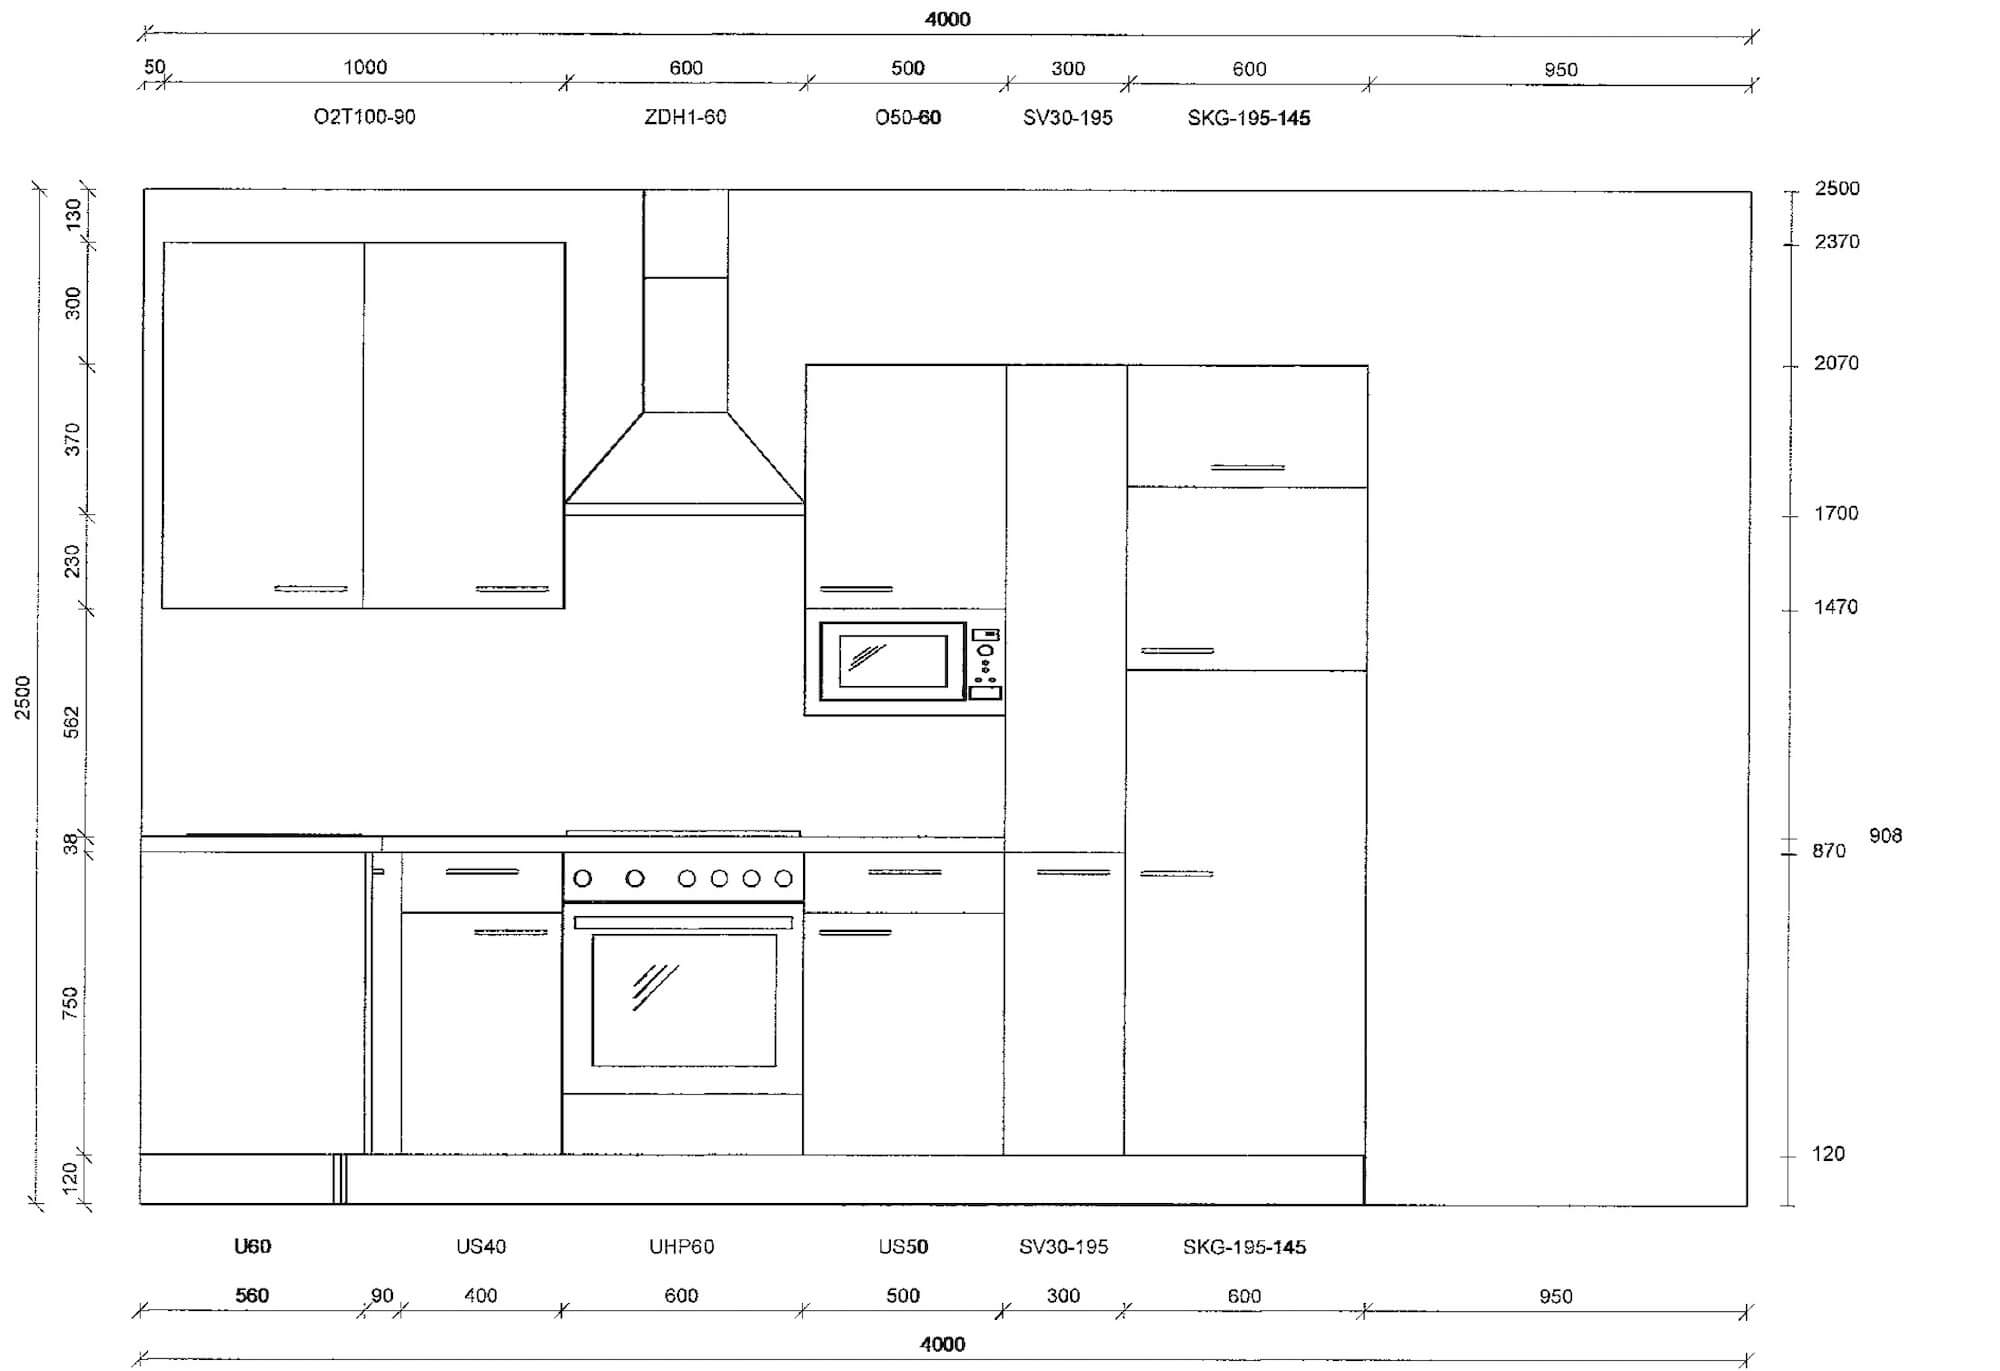 L-Küche modern Beton weiß | Küche günstig kaufen